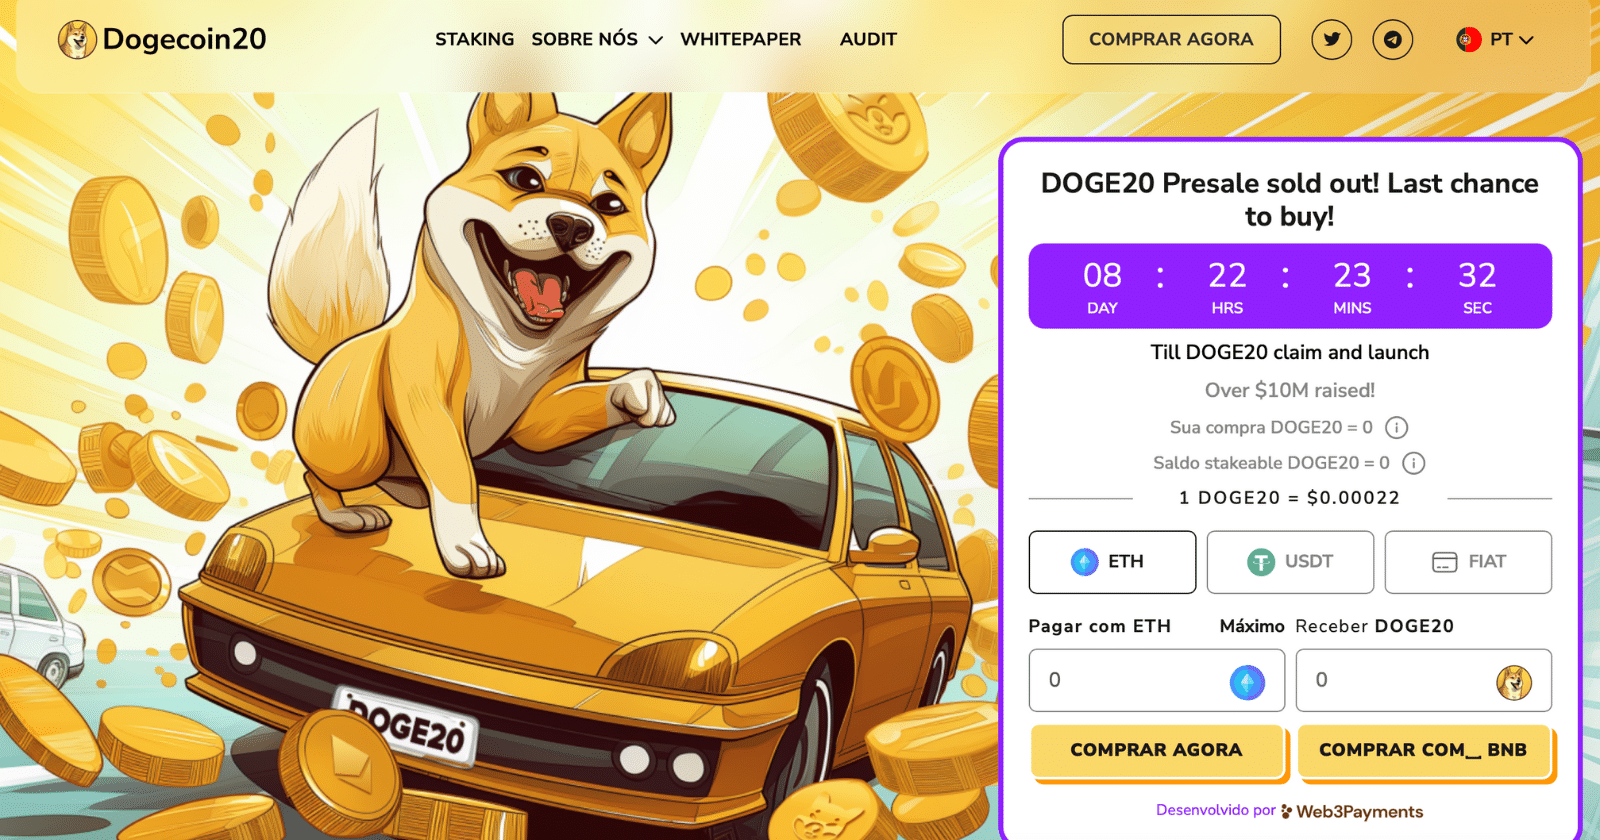 compra do Dogecoin20 nesta reta final da pré-venda estão à disposição no site da memecoin